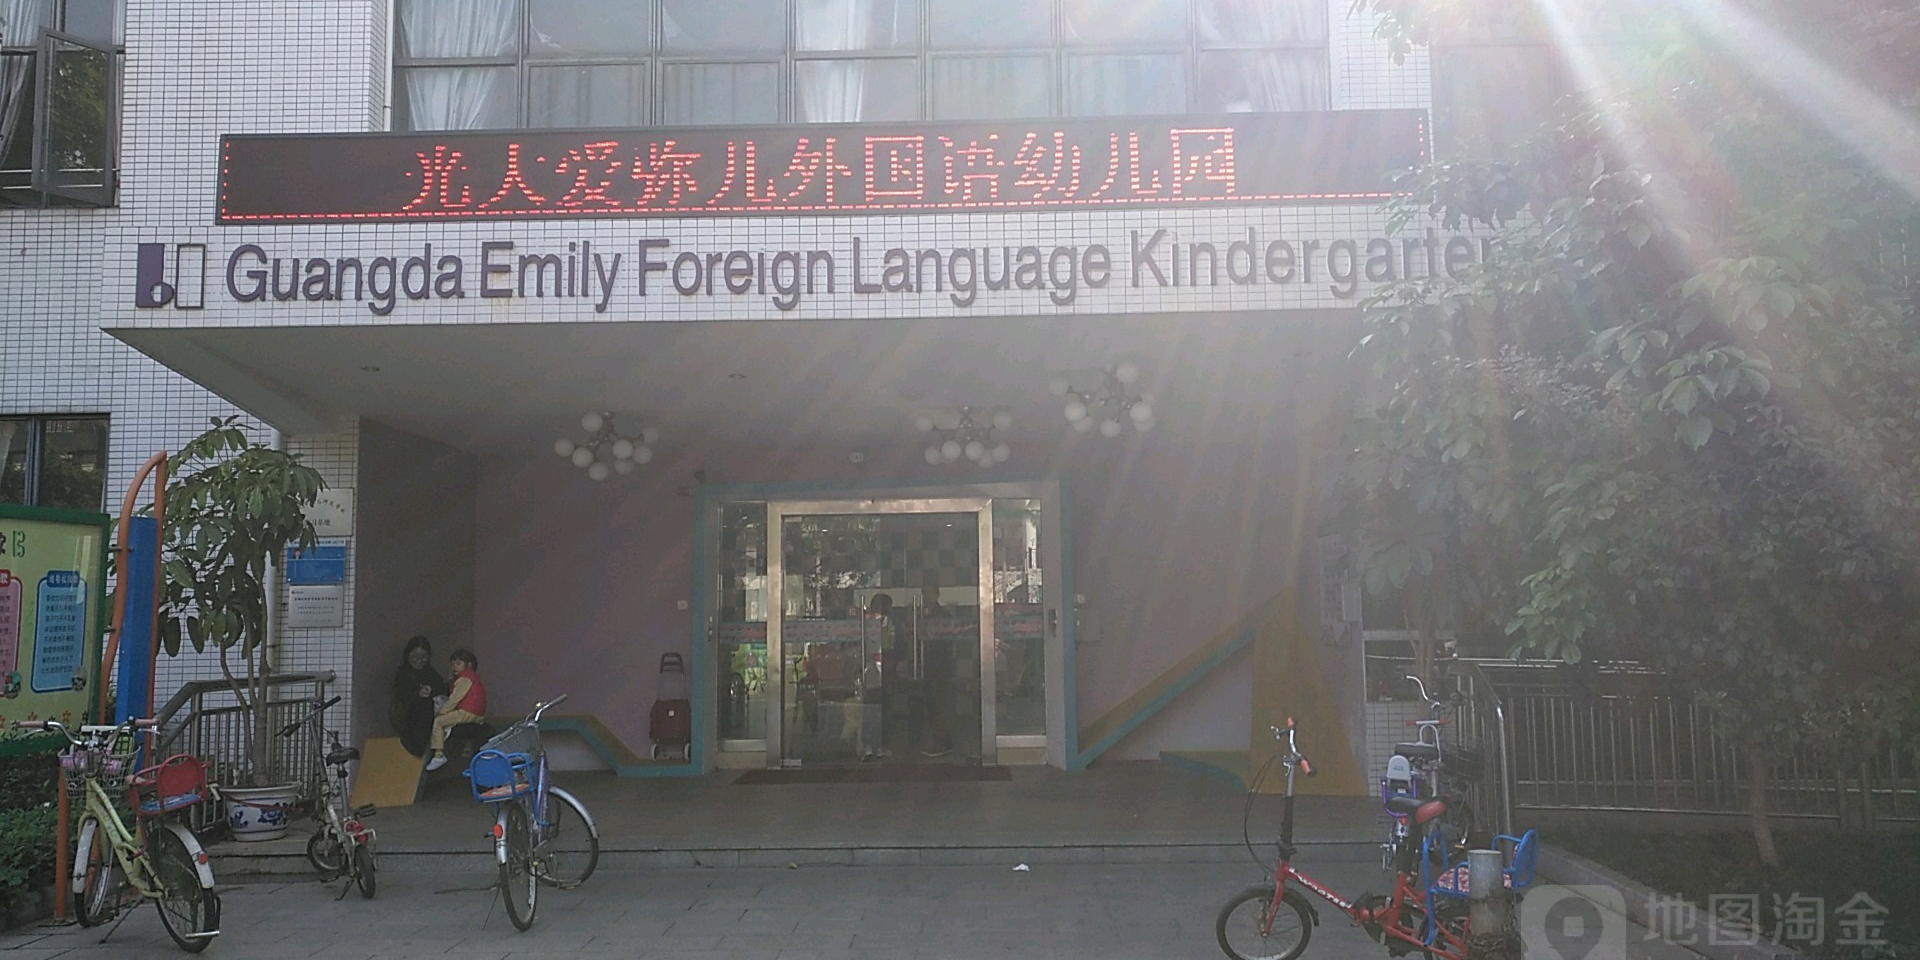 光大爱弥儿外国语幼儿园的图片